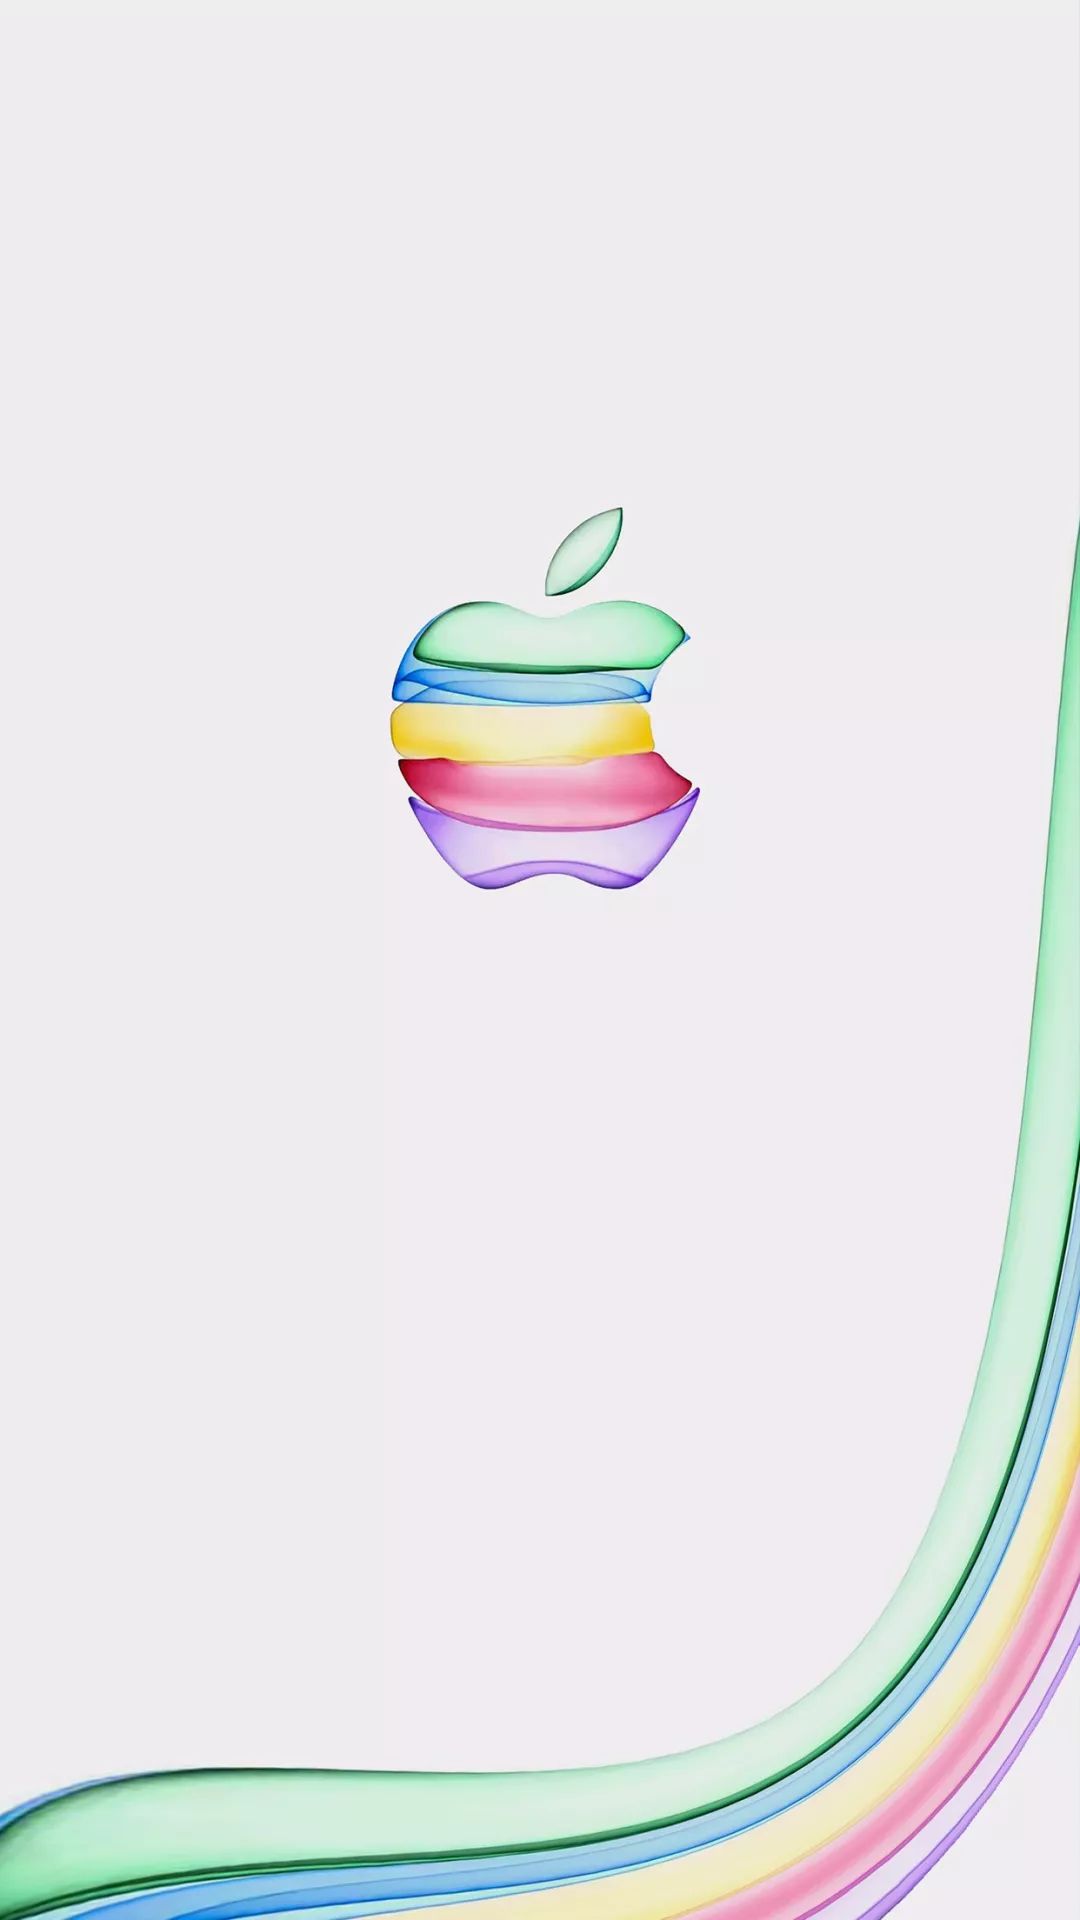 苹果logo纯色壁纸图片